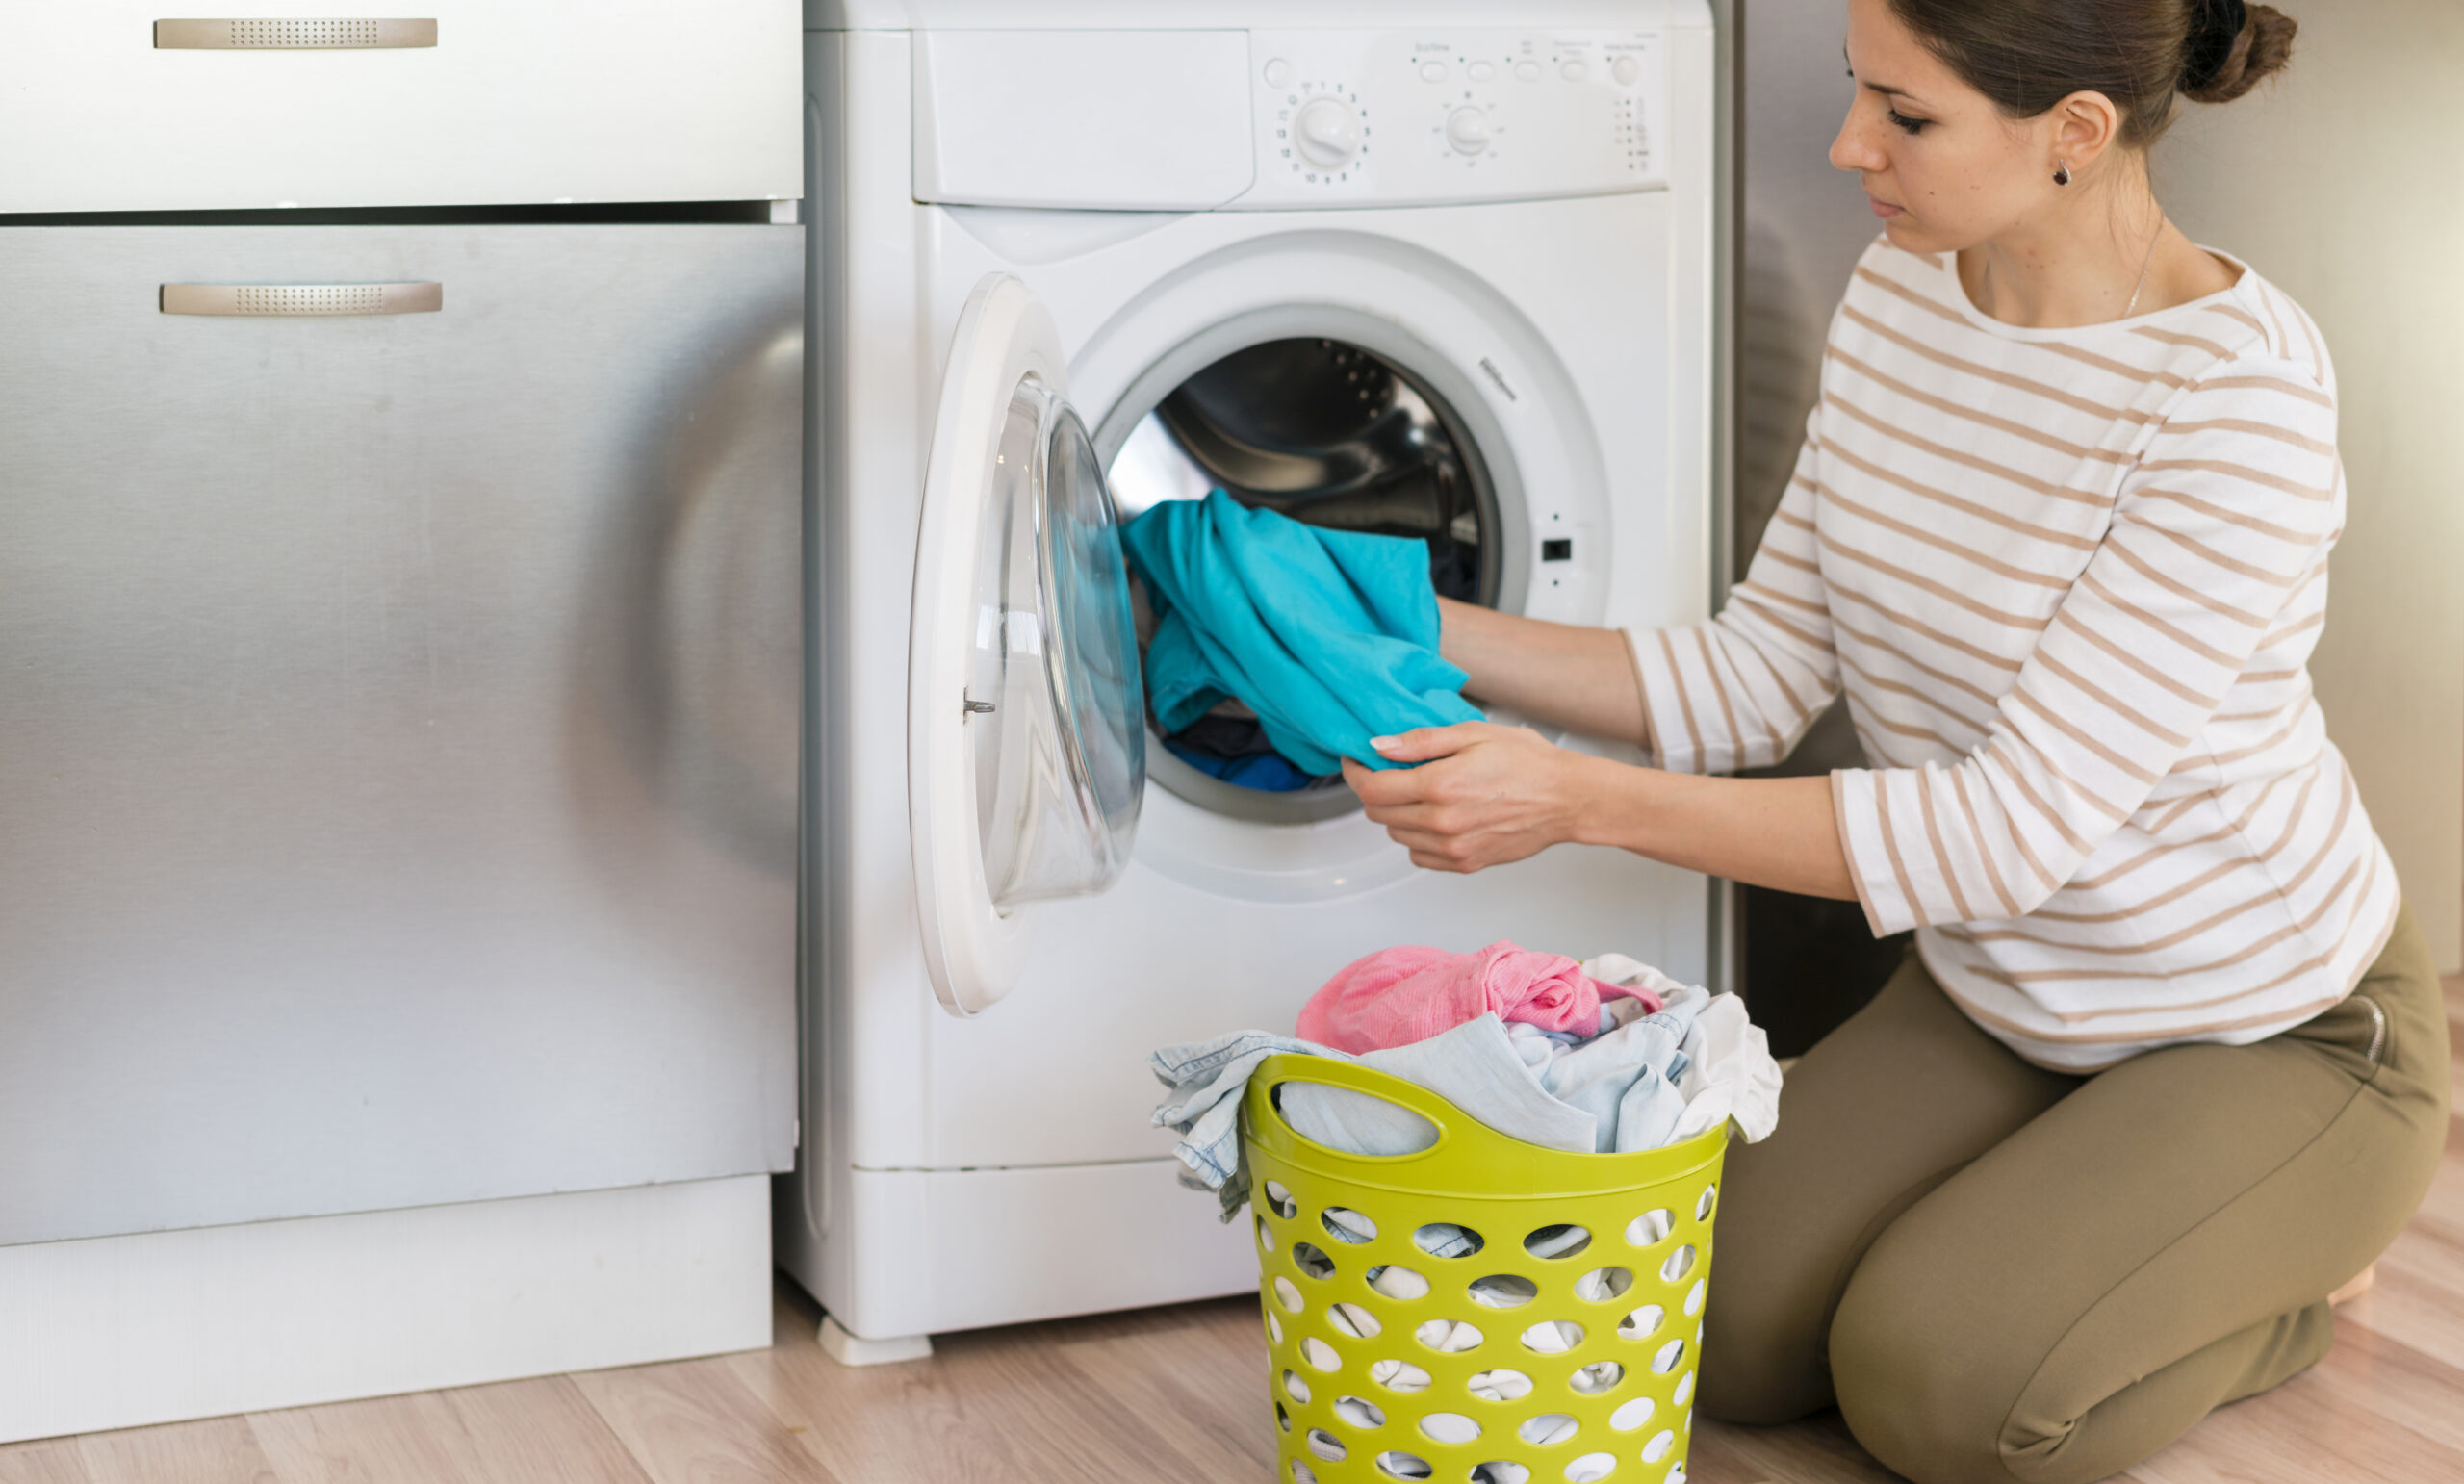 Washing machine brands to avoid